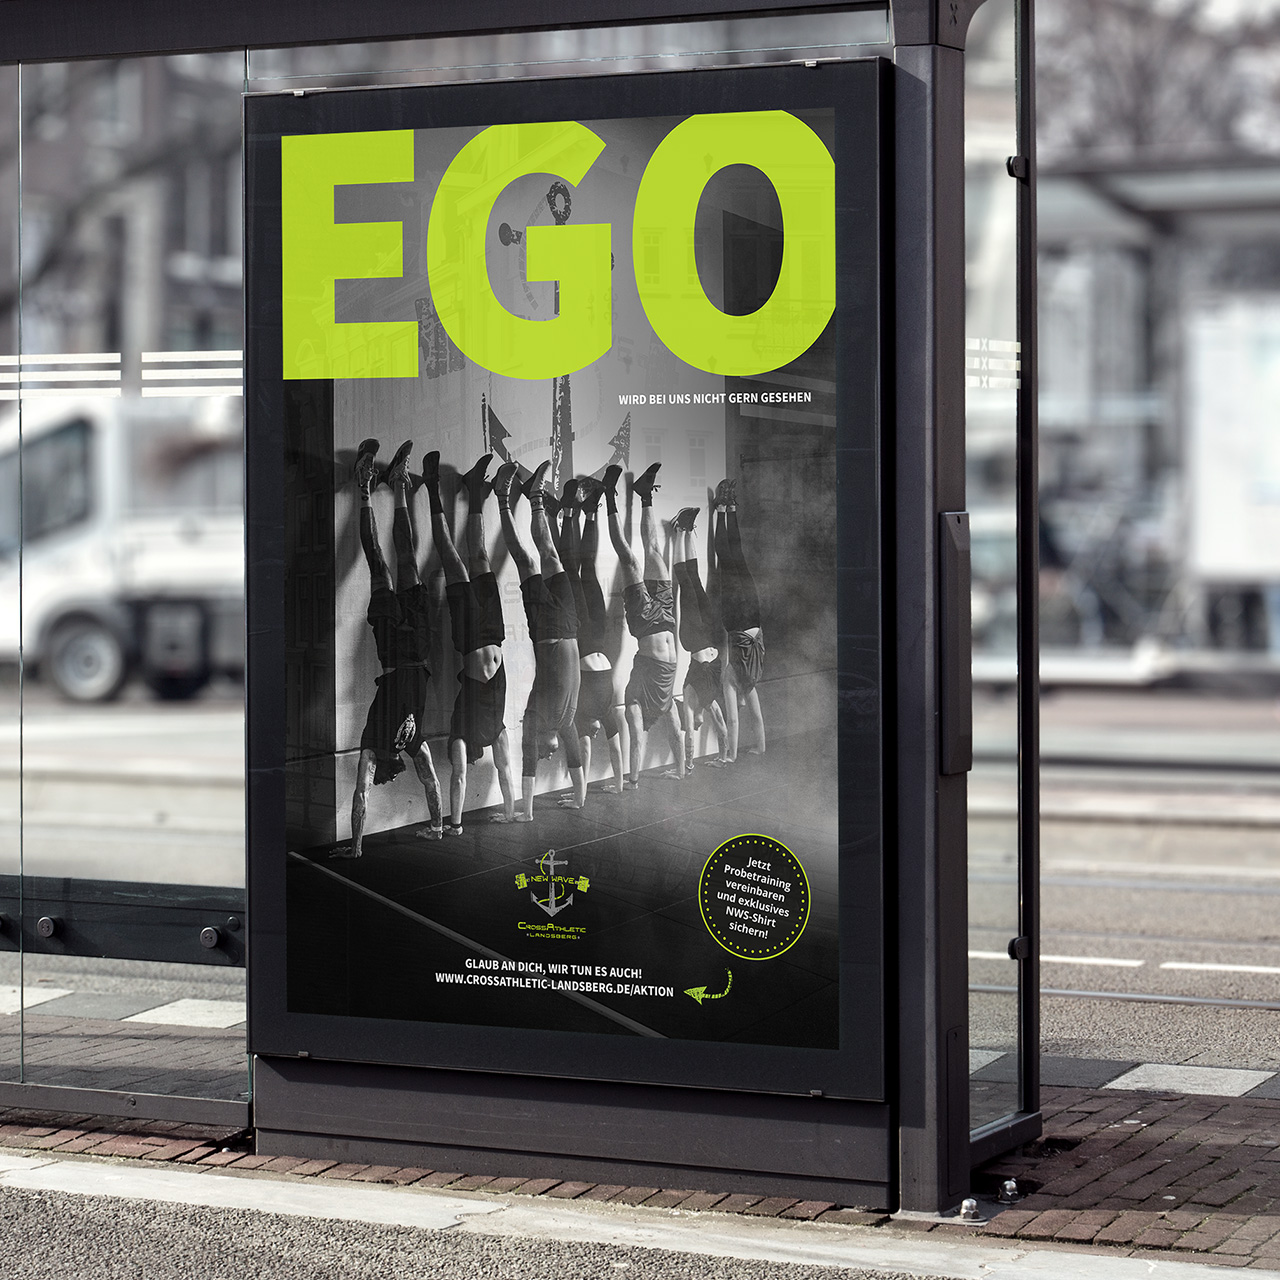 Mockup einer Anzeige an einer Bushaltestelle. auf welchem sieben Menschen zu sehen sind, die einen Handstand machen. Die Überschrift lautet: Ego wird bei uns nicht gern gesehen.